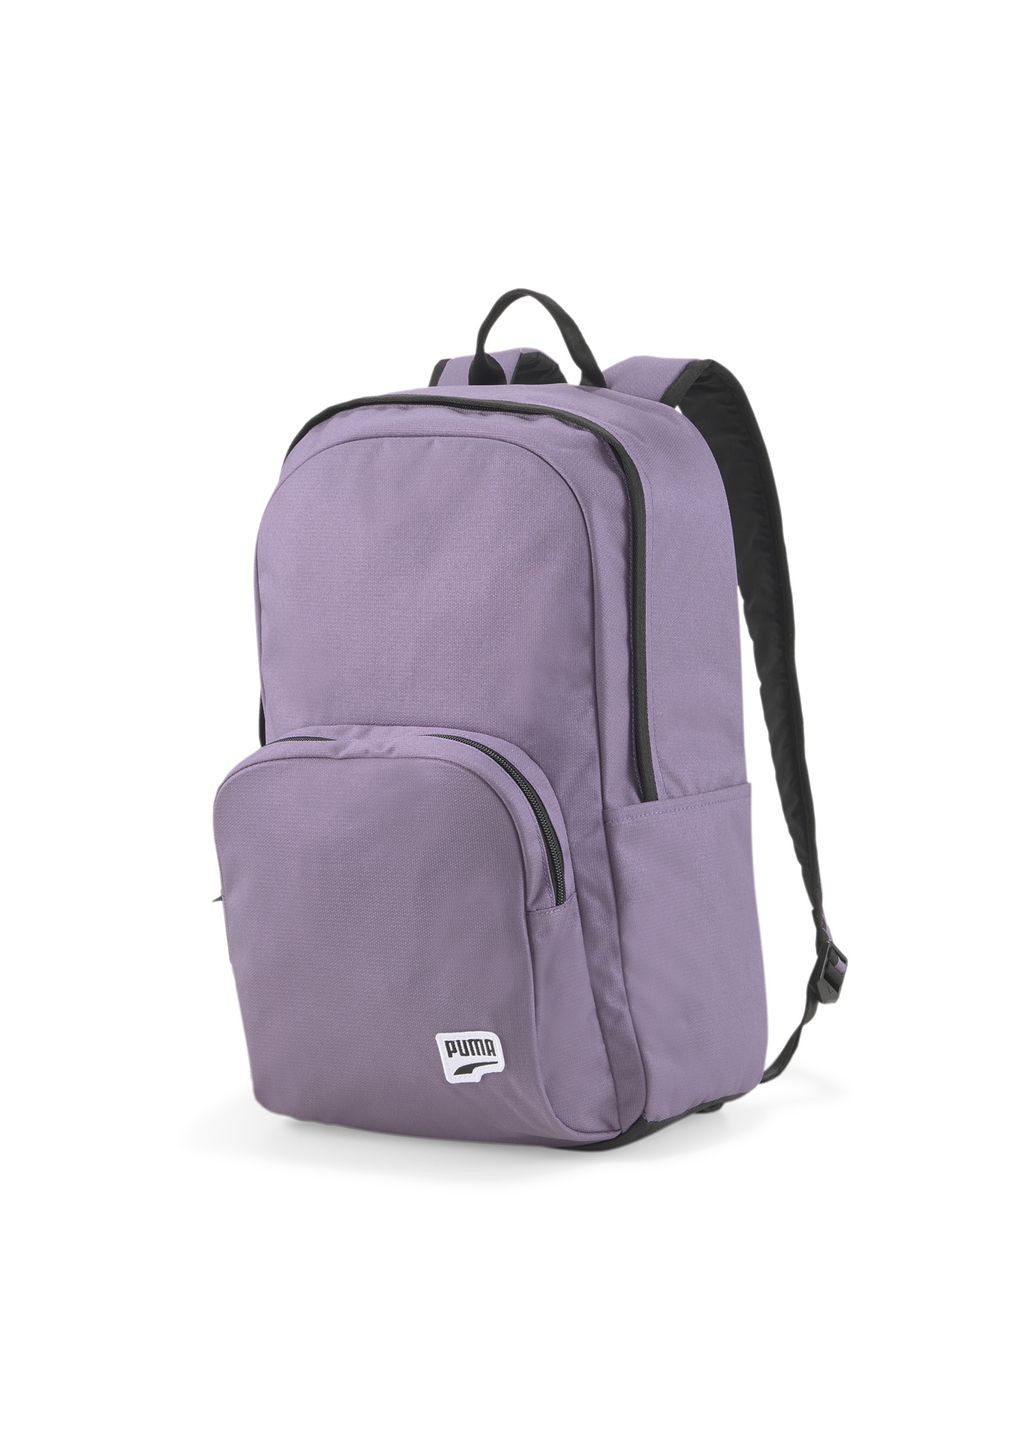 Рюкзак Originals Futro Backpack фиолетово-угольный unisex 31 х 45 х 14 см Puma (262297510)